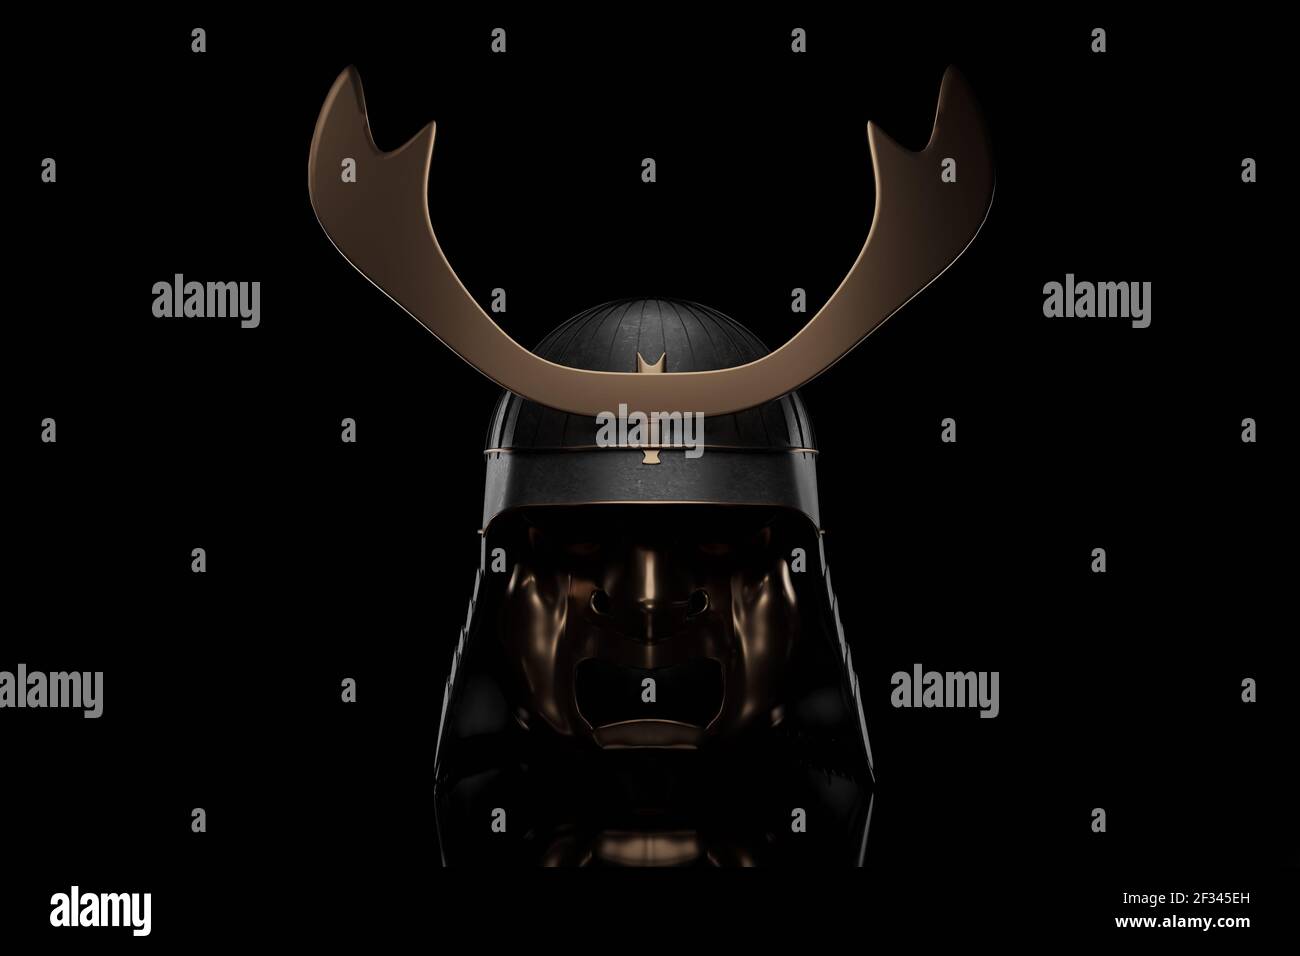 3d rendering of ancient Samurai helmet type in low key light Stock Photo